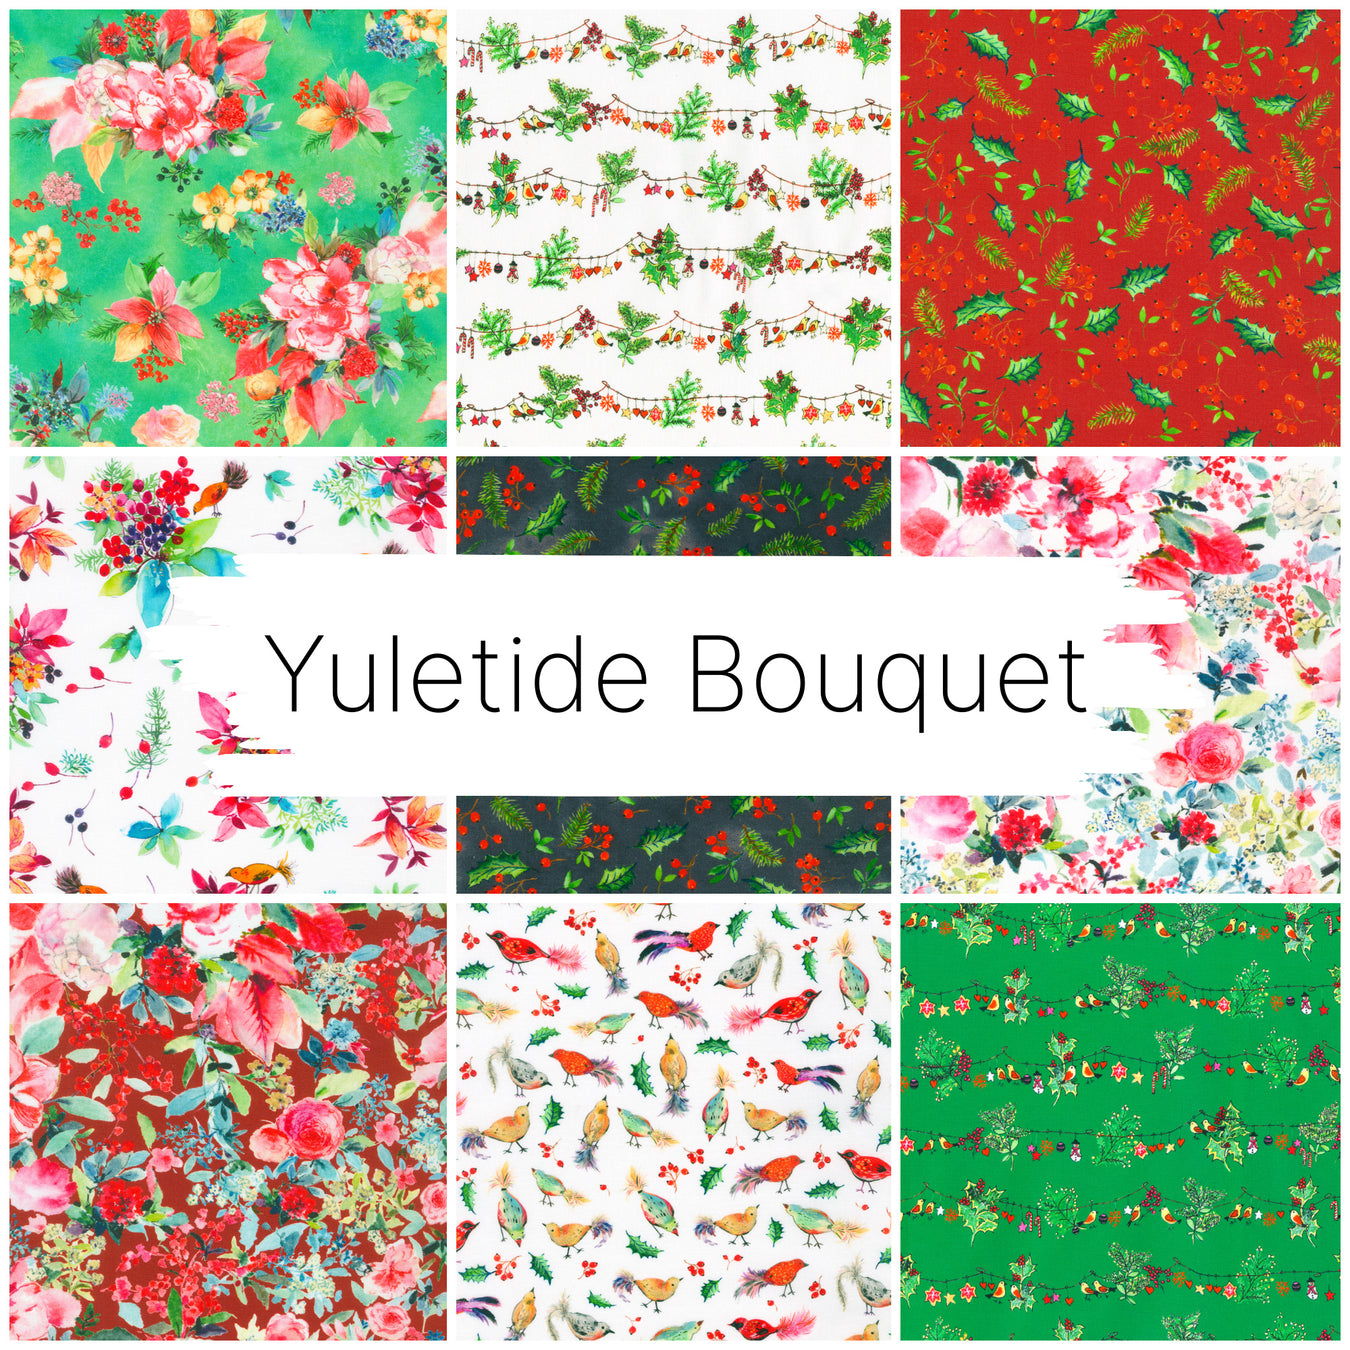 Yuletide Bouquet